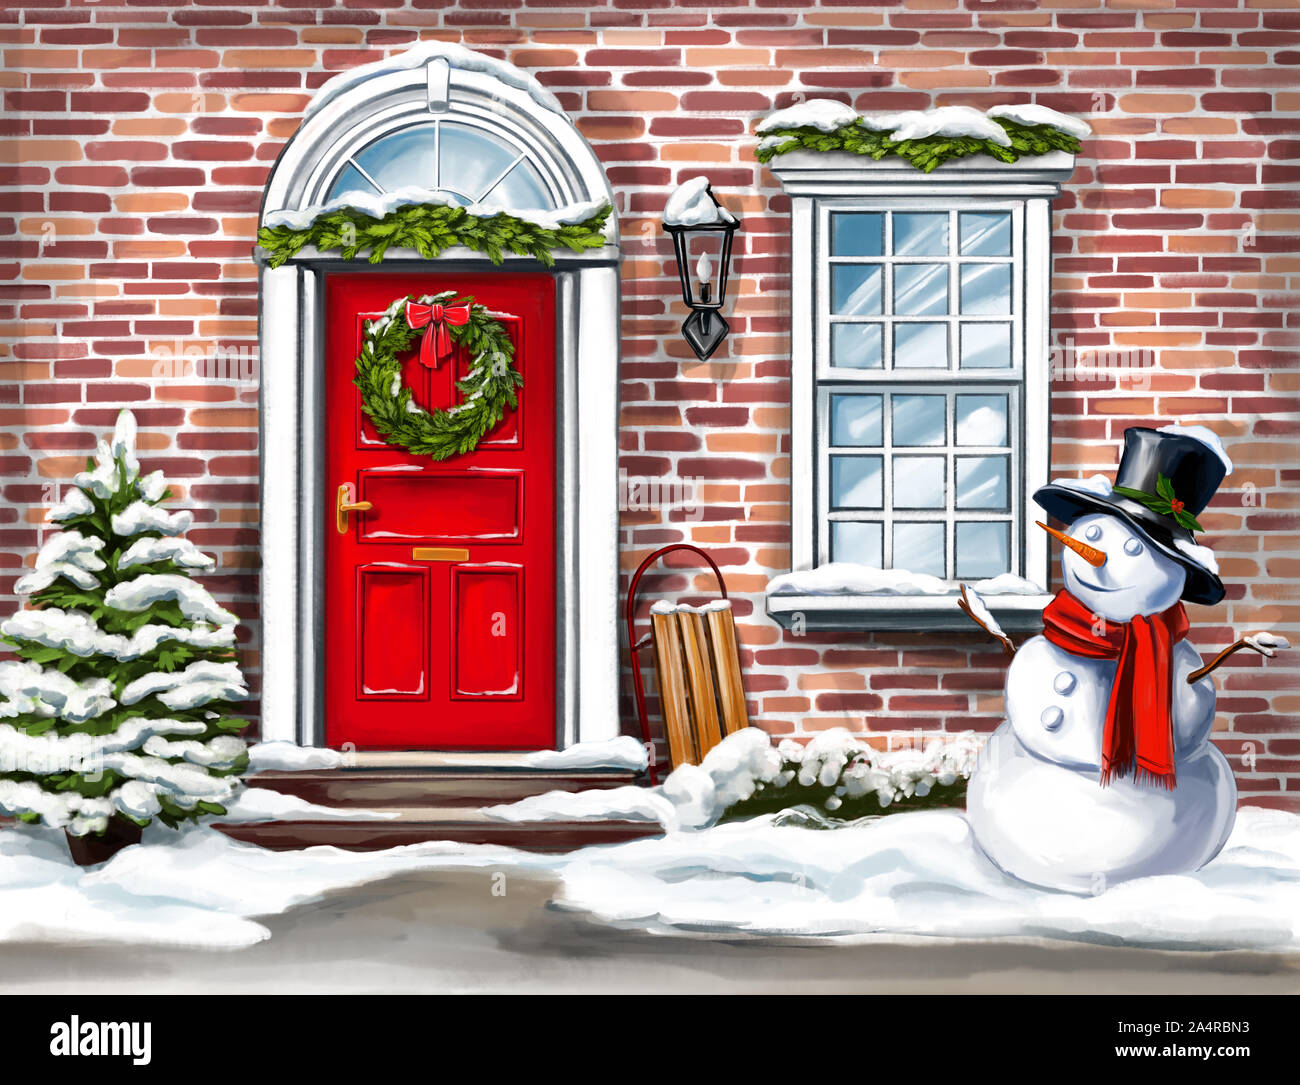 Alamy Aquarellfarben gemalt im Dekoration, an Grußkarte, der Tür Stockfotografie Illustration und Kranz Art Weihnachten Winter Schneemann, Weihnachten Home - Weihnachten mit